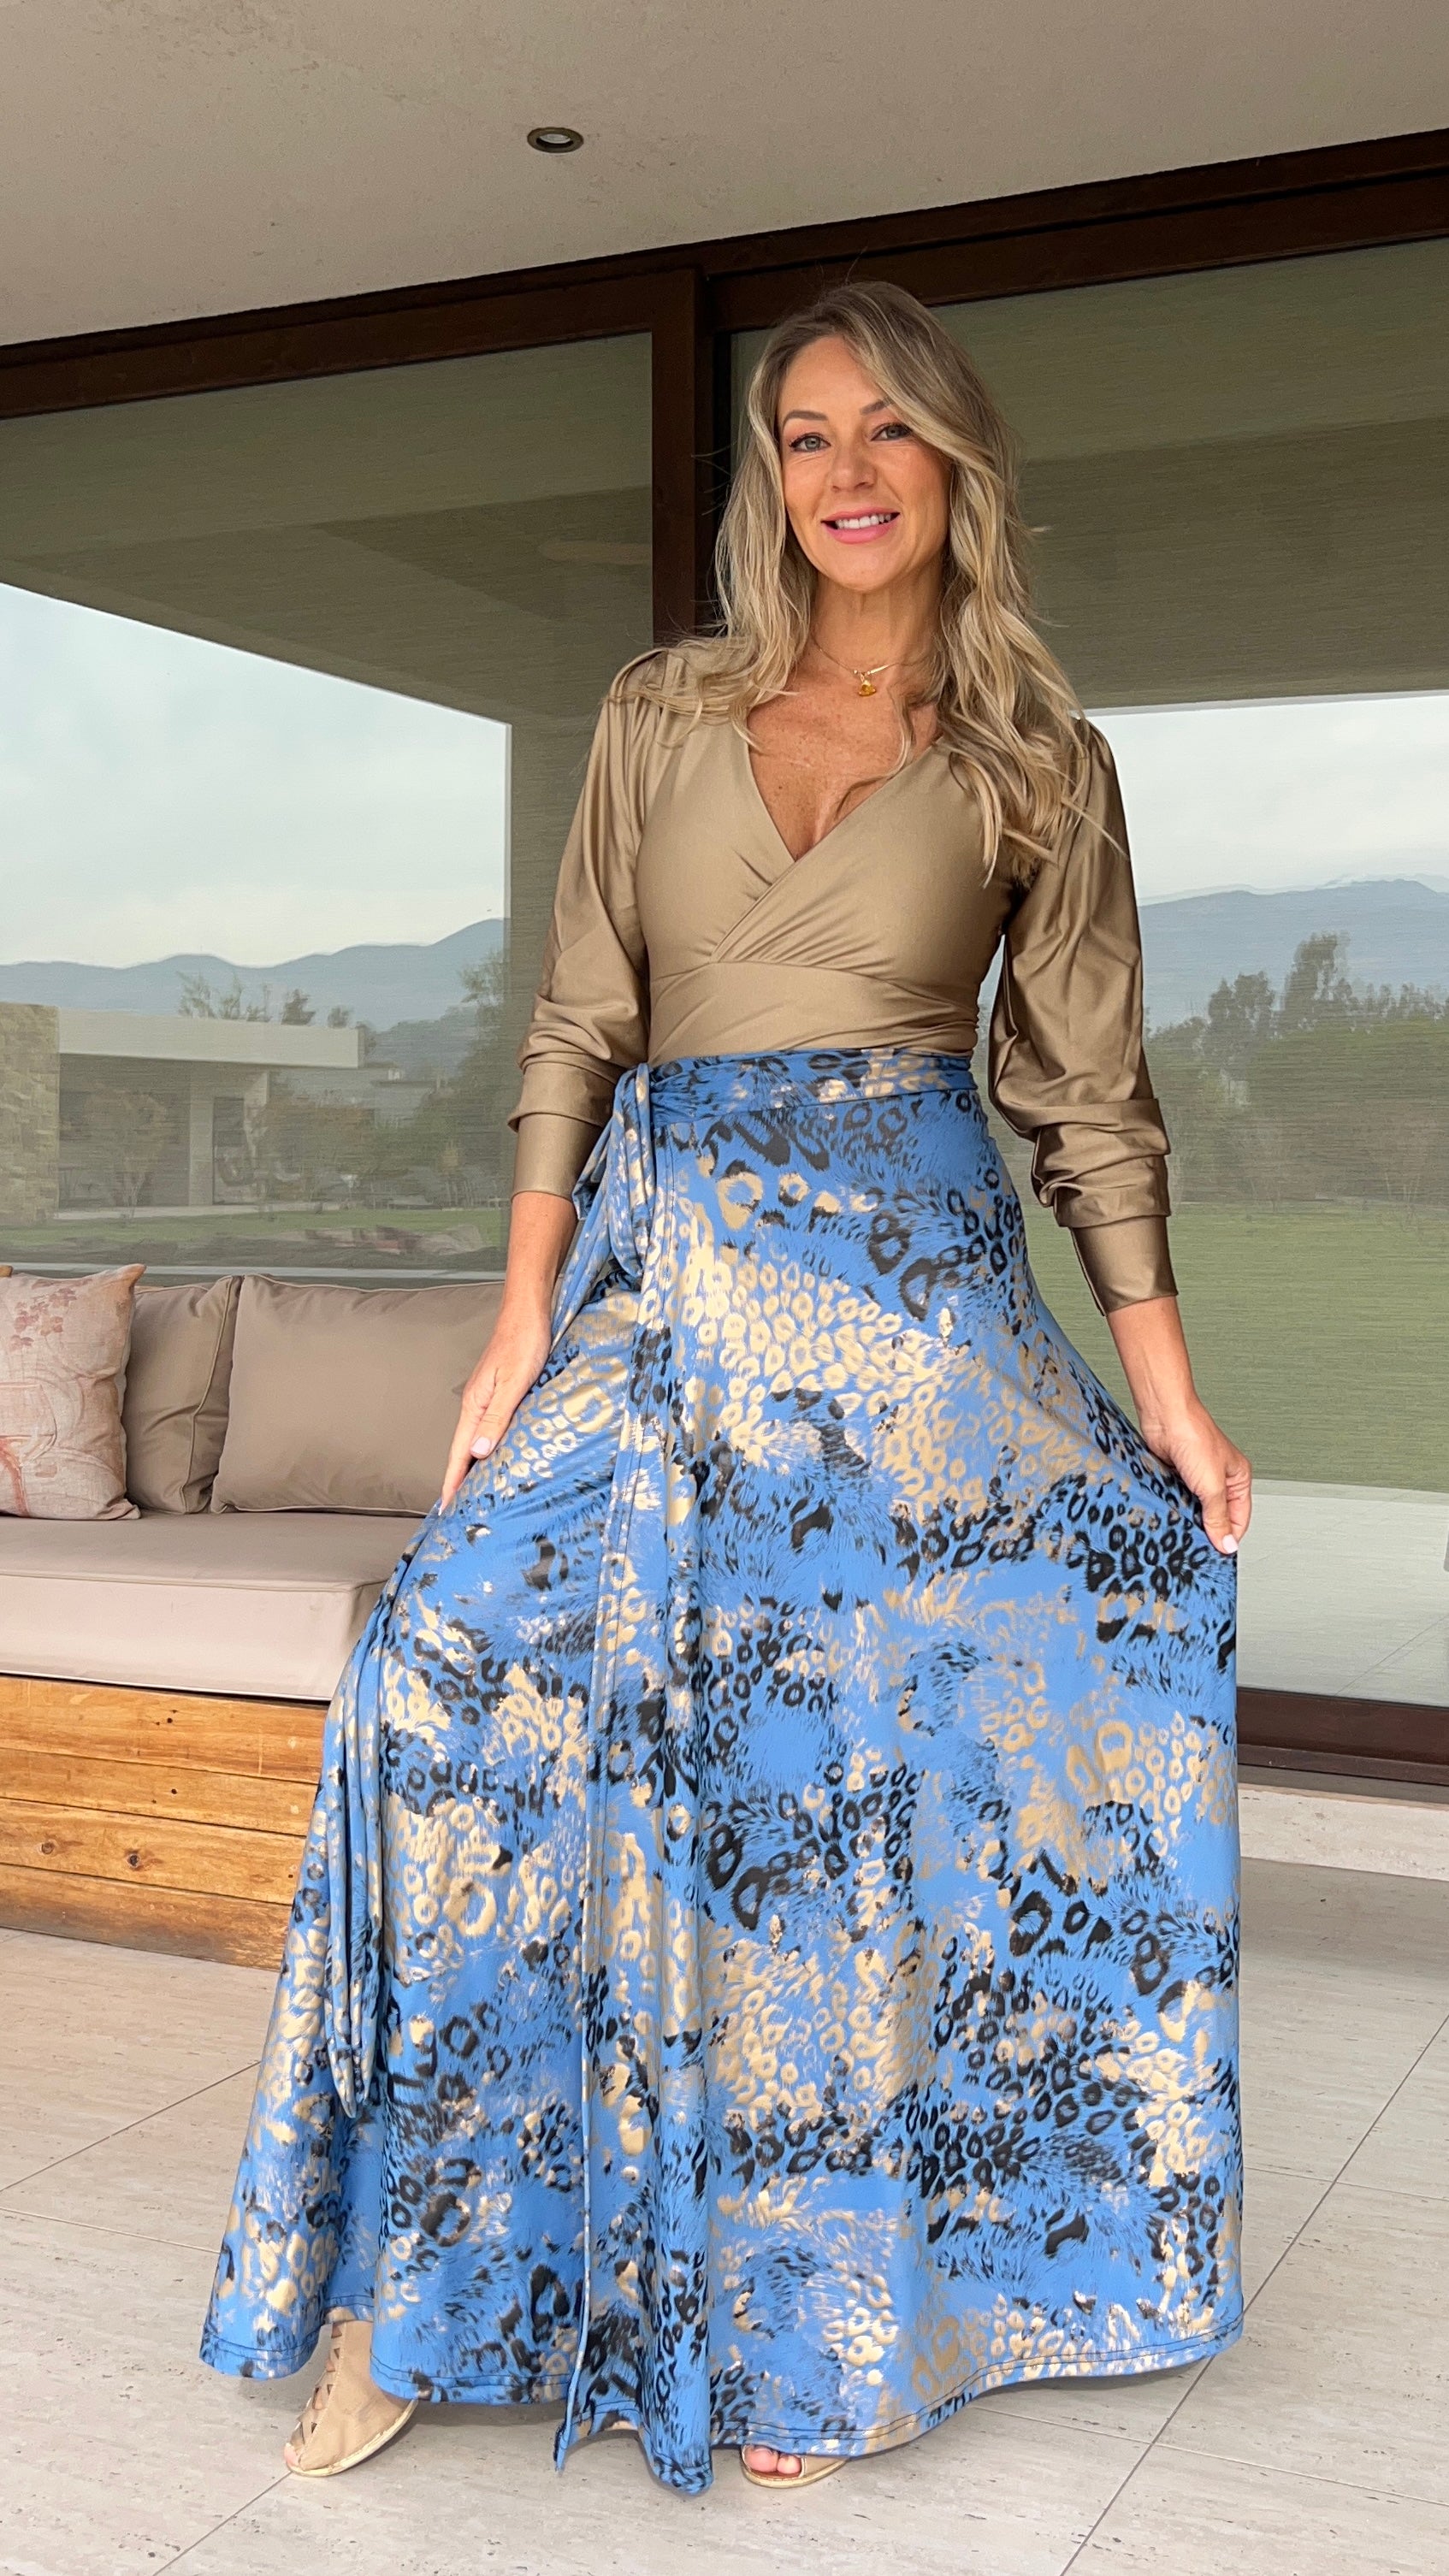 Falda envolvente Dupont print azul lavanda y dorado| falda pareo print fiesta| Amoramar.cl 4